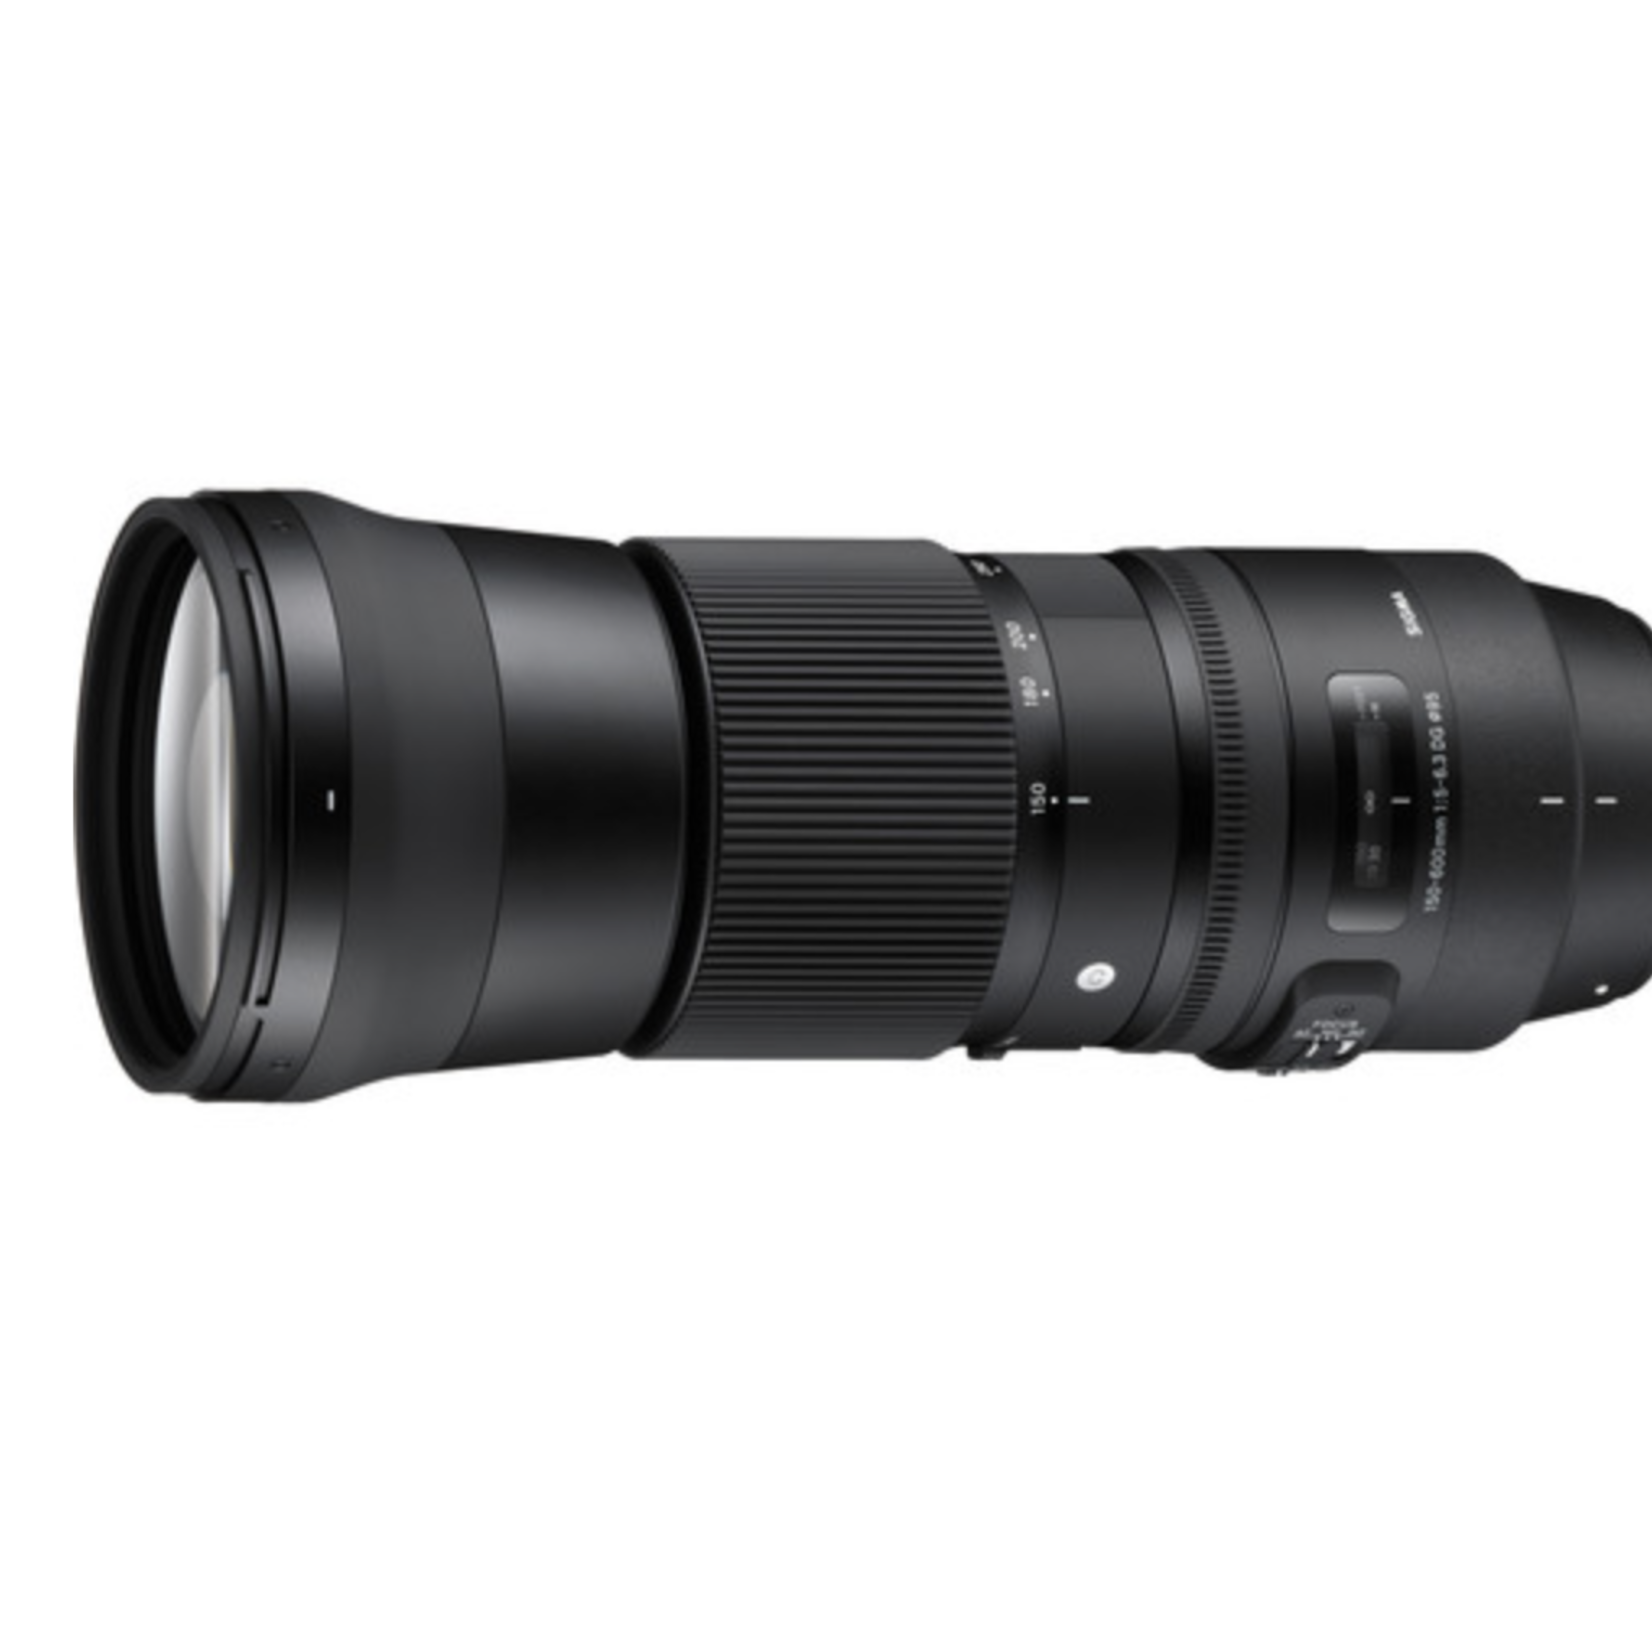 Sigma Sigma 150-600mm f/5-6.3 DG OS HSM Contemporary Lens for Nikon F